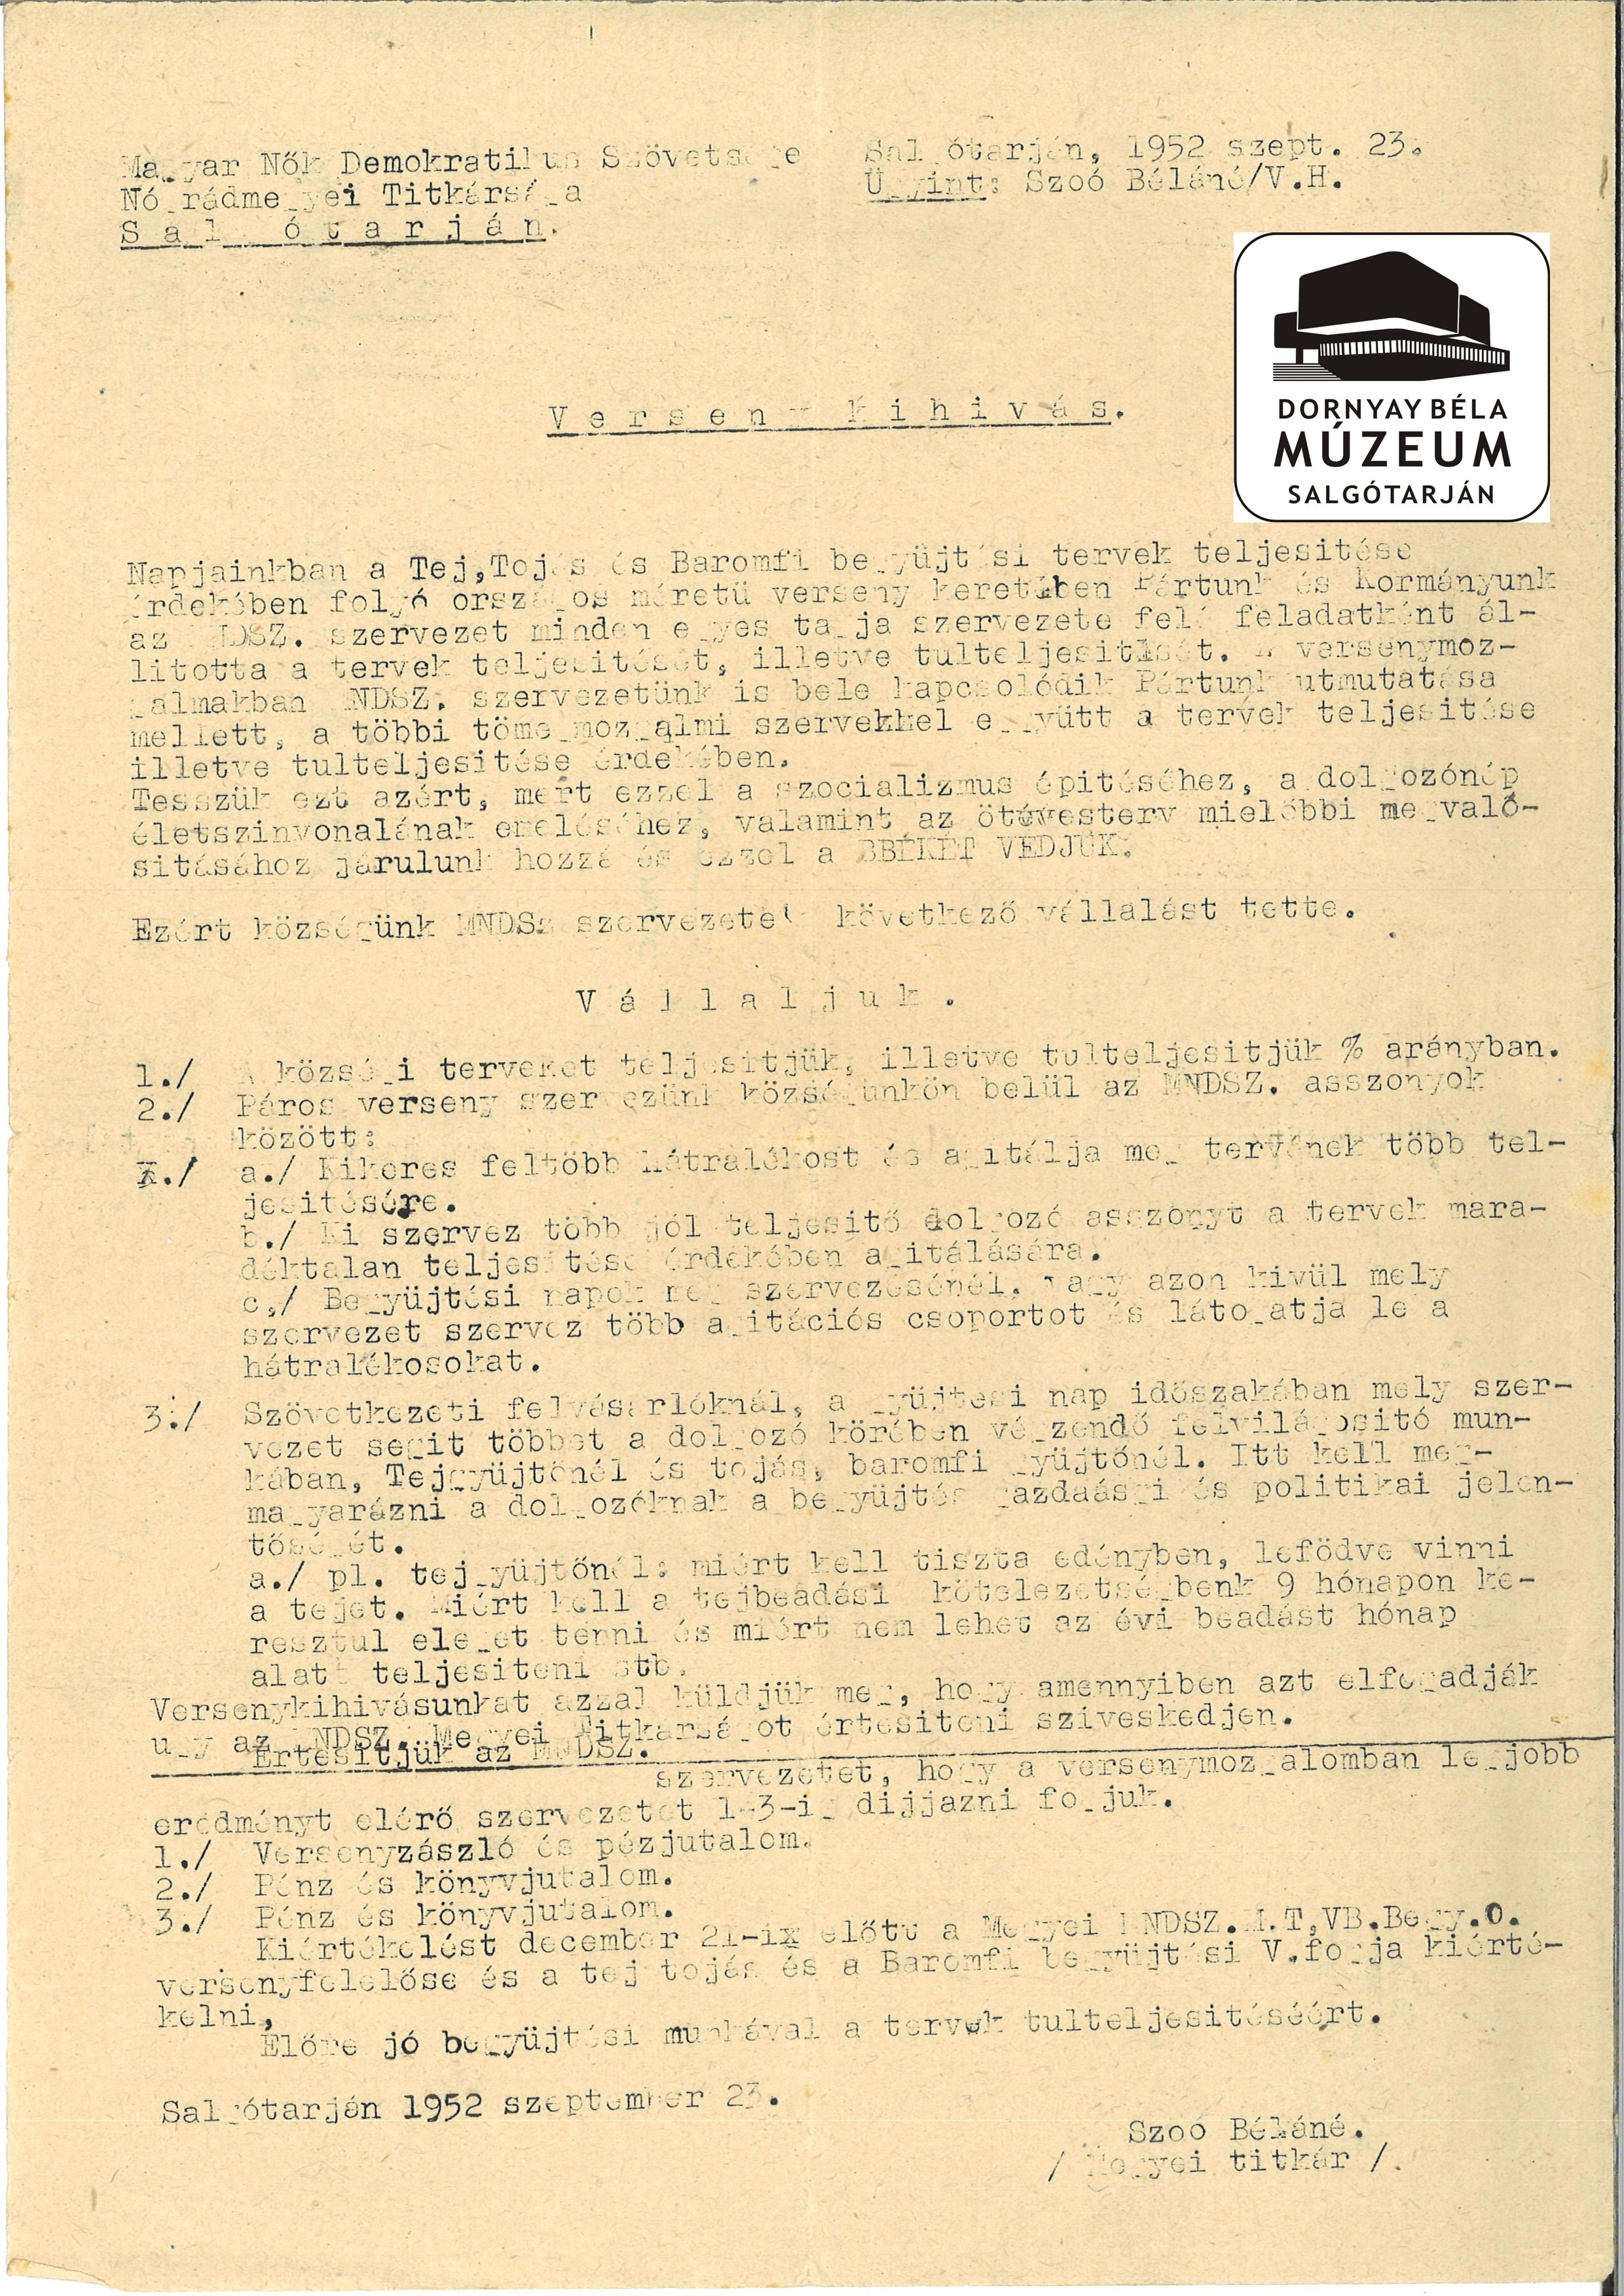 MNDSz Nógrád megyei titkárságnak levelei 1952 (Dornyay Béla Múzeum, Salgótarján CC BY-NC-SA)